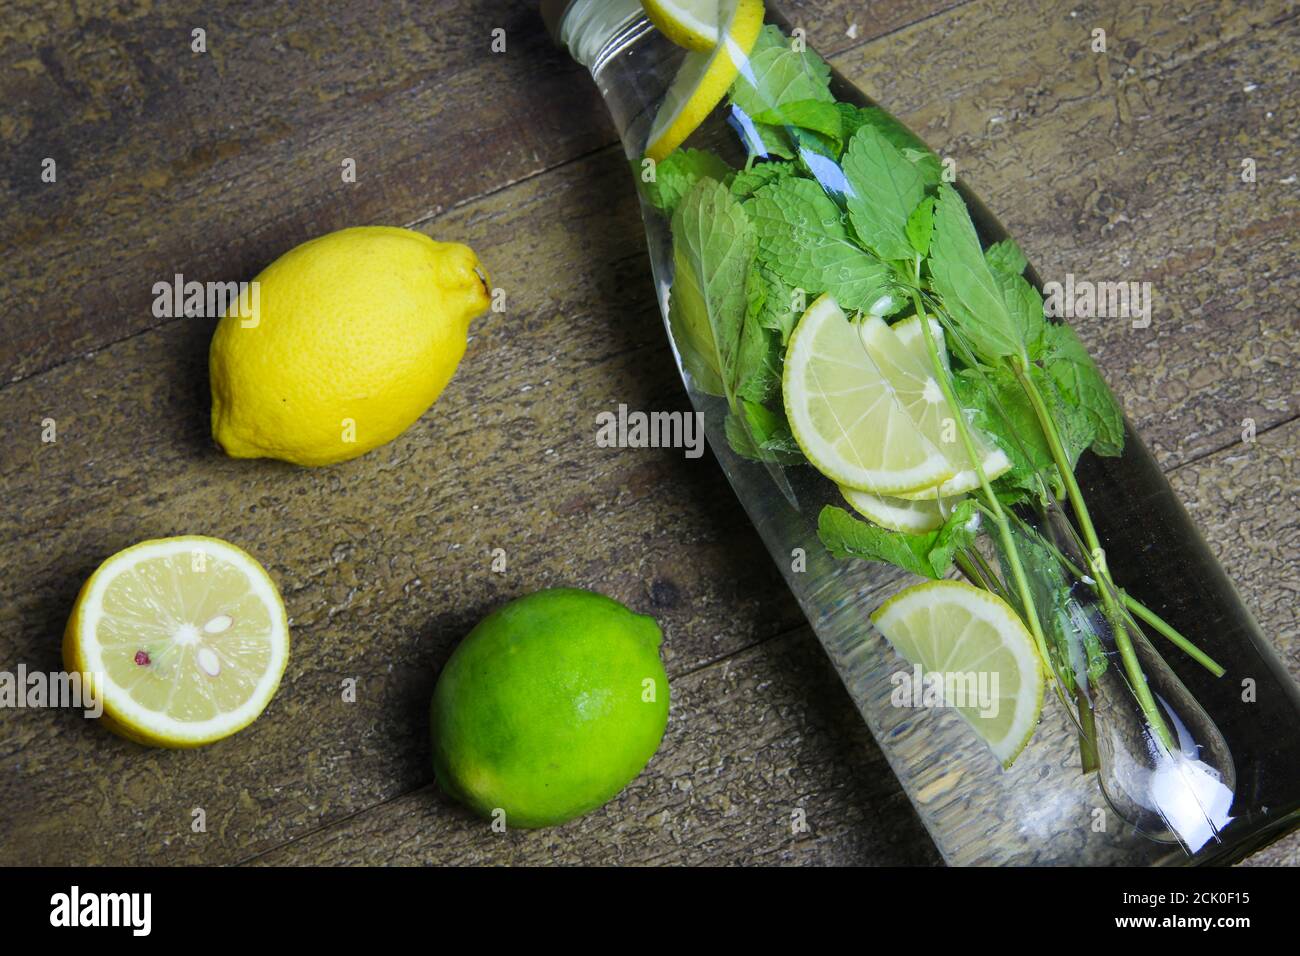 Vue sur la bouteille en verre d'eau isolée aromatisée avec des feuilles de menthe et des agrumes jaunes, des fruits à la chaux verte sur une table en bois (Focus sur la bouteille) Banque D'Images